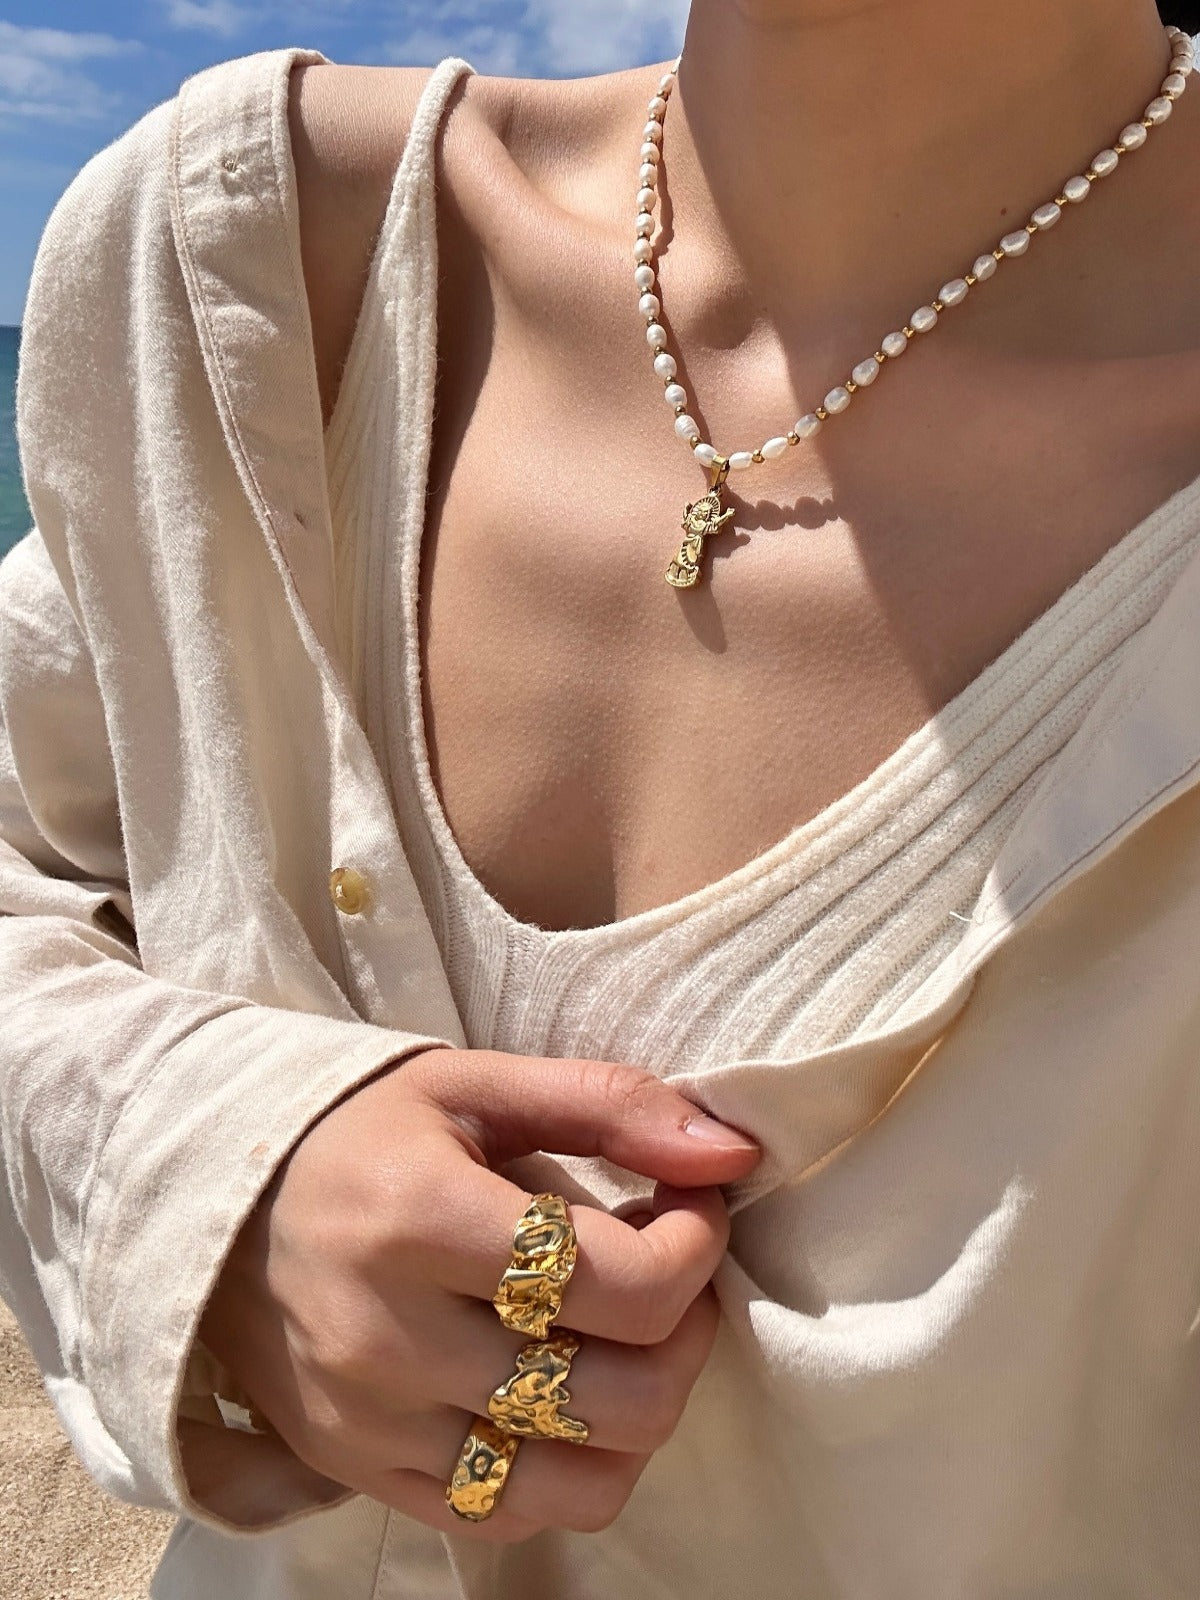 Peru Pearl Necklace